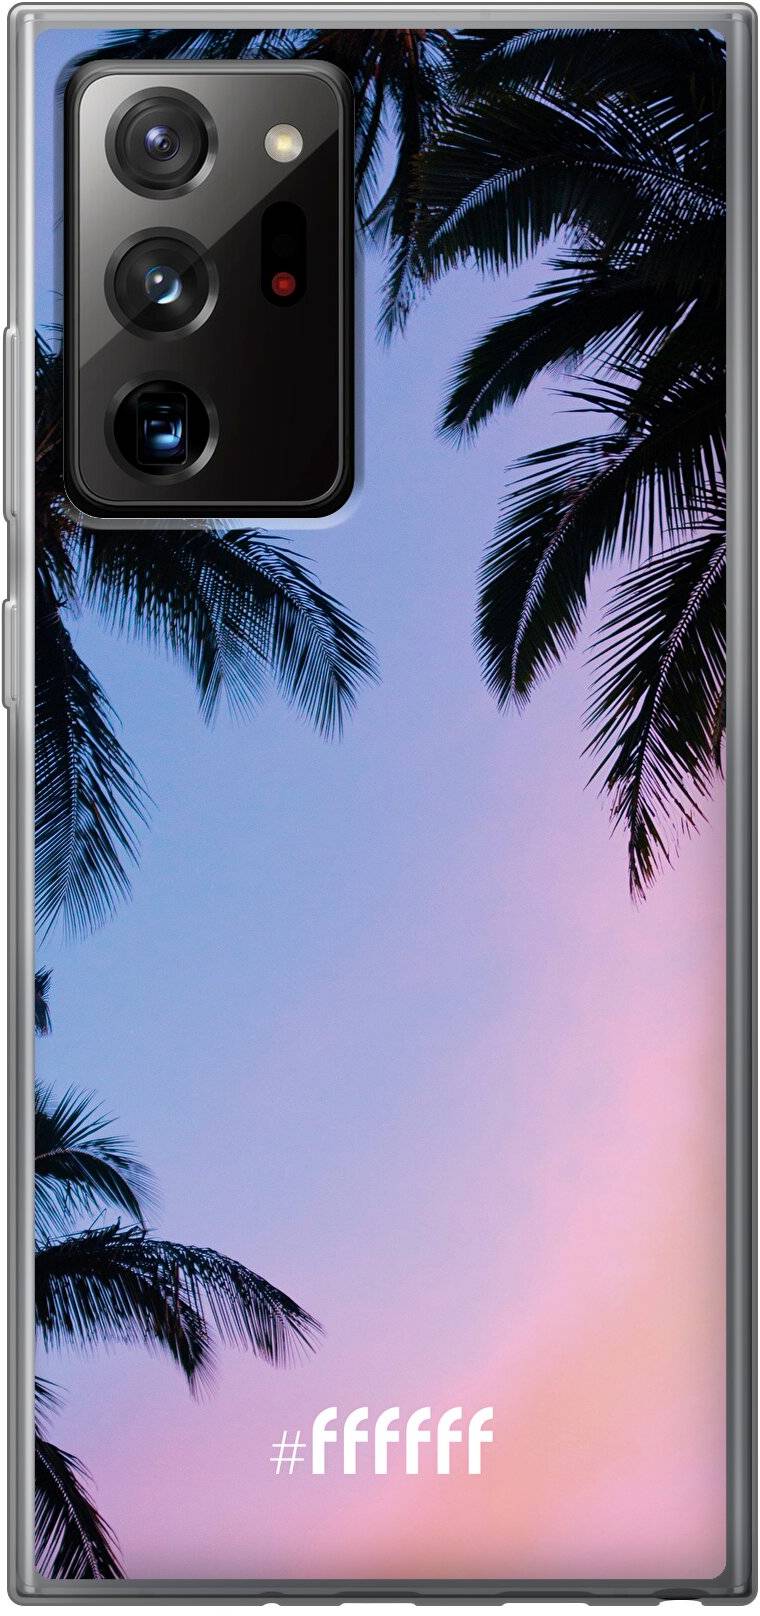 Sunset Palms Galaxy Note 20 Ultra